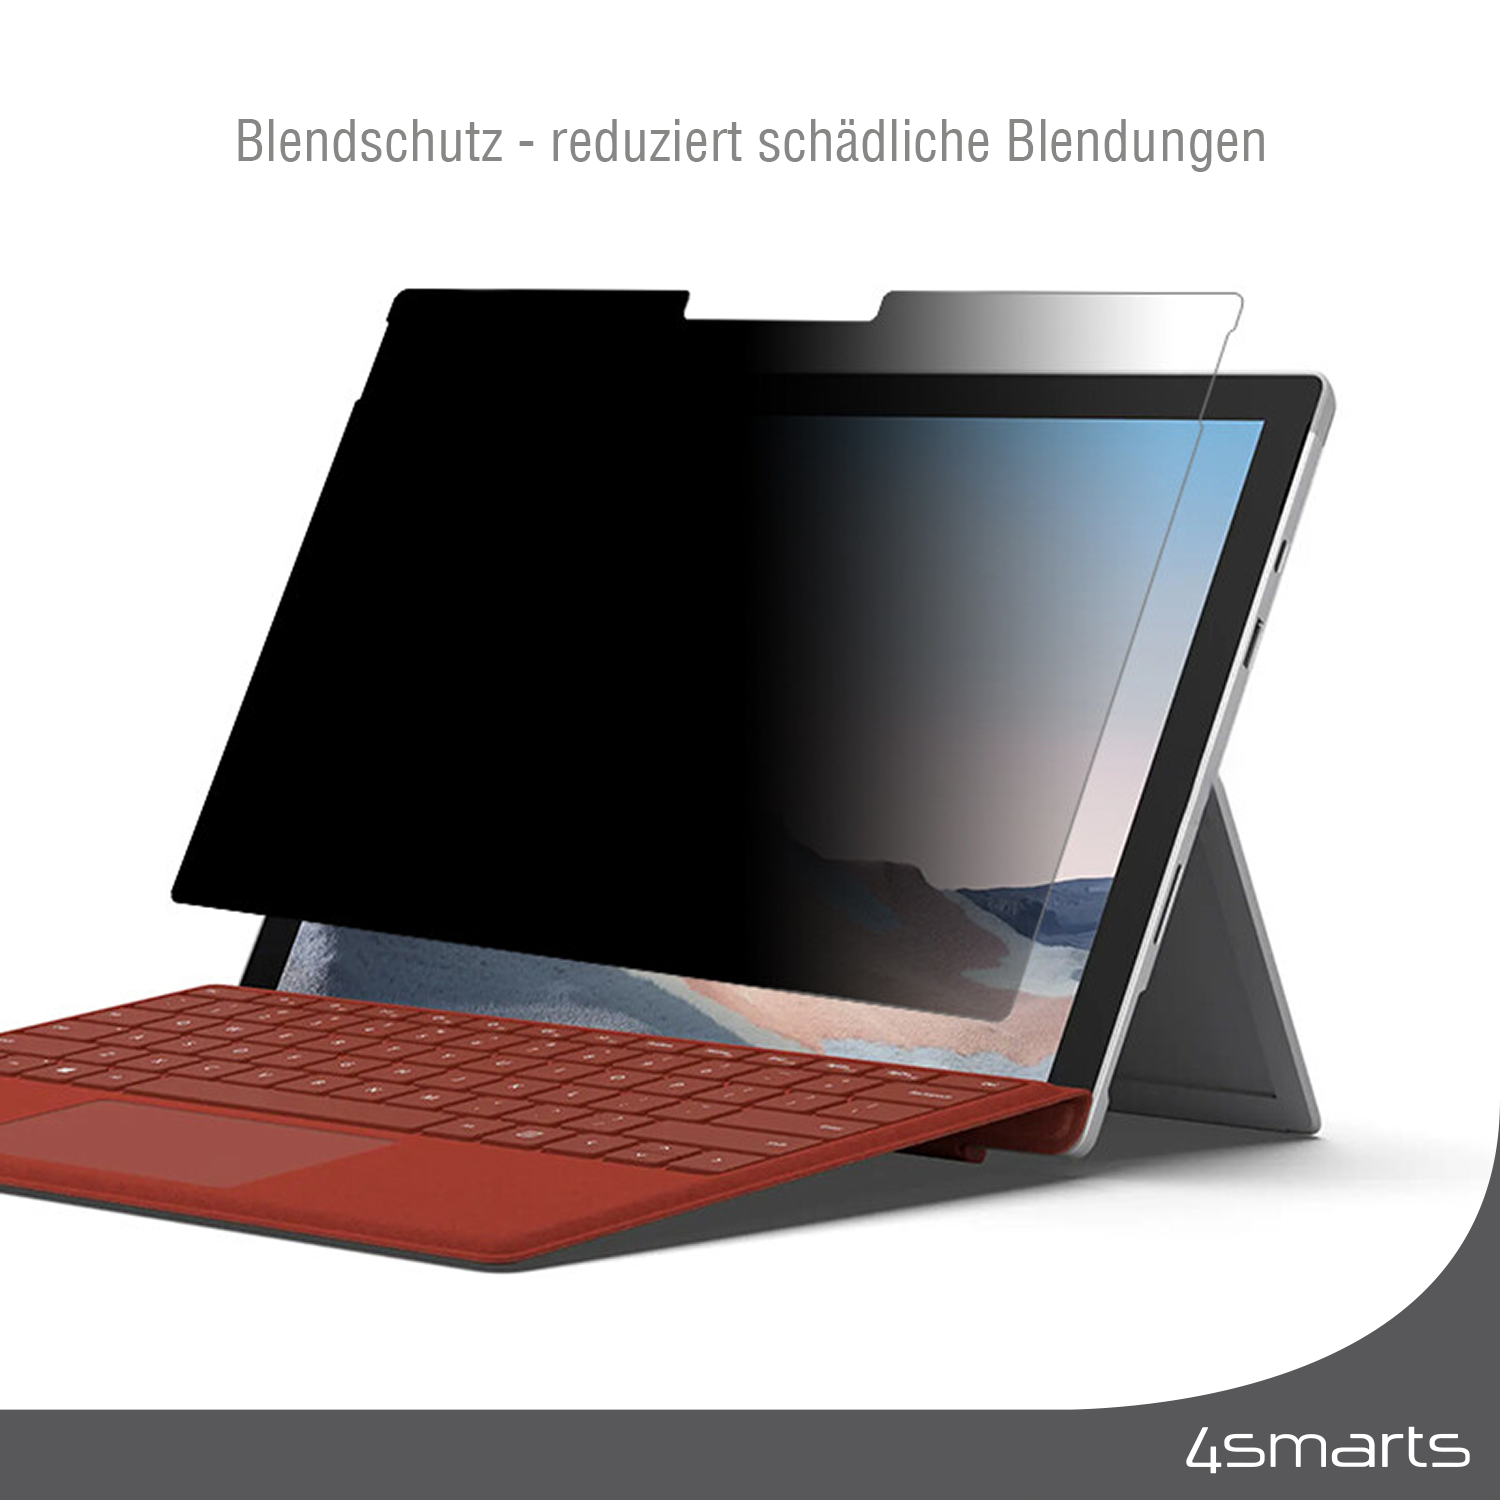 Mit 4smarts Tablet Schutzsichtfolie für Surface Laptop 4 13.5-Zoll wird dein Display auch vor Kratzern und Verschmutzungen wirkungsvoll geschützt.